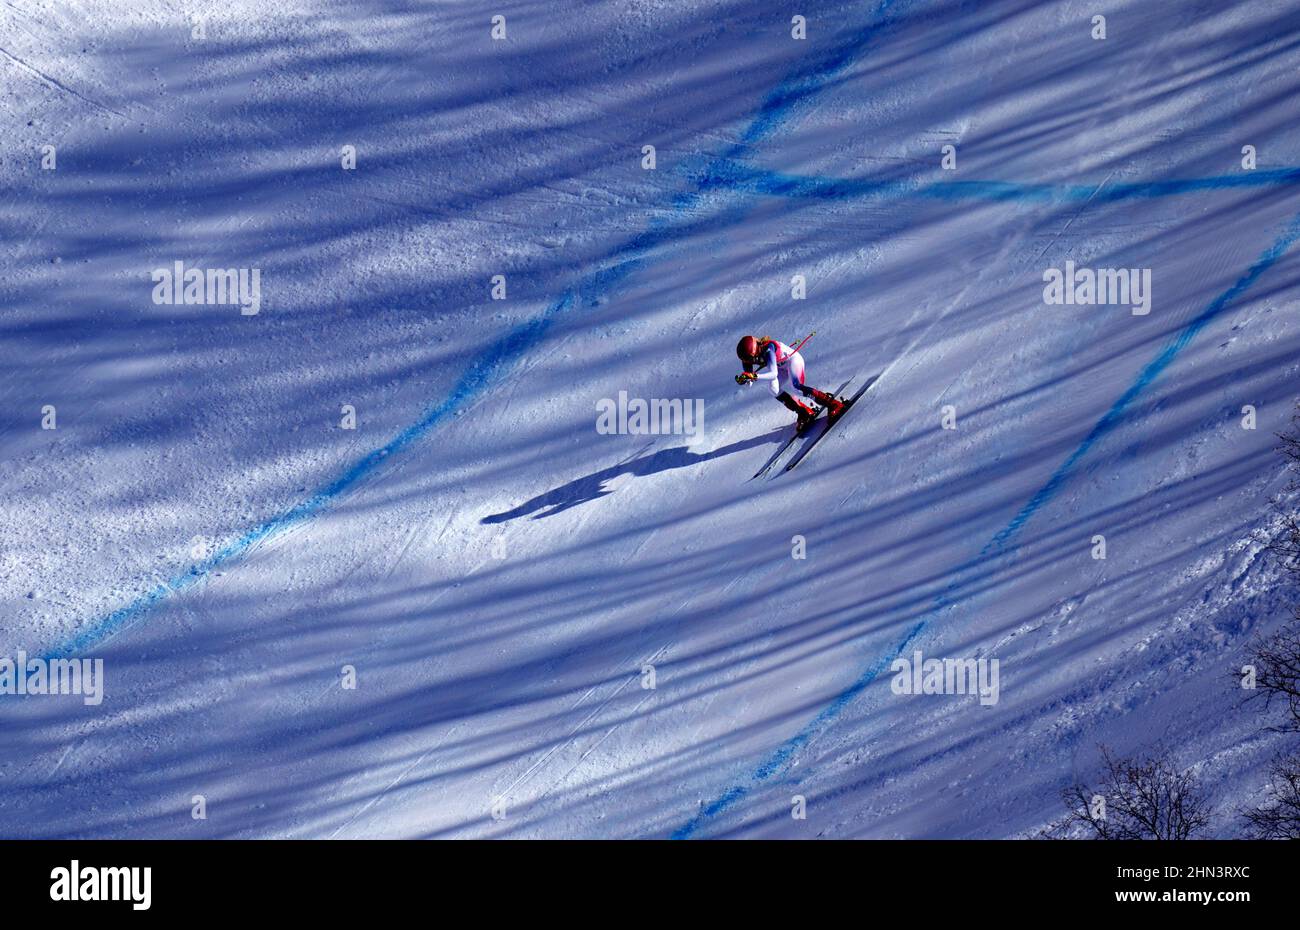 Pechino, Cina. 14th Feb 2022. Mikaela Shiffrin degli Stati Uniti Skis l'allenamento finale delle donne in discesa alle Olimpiadi invernali di Pechino venerdì 14 febbraio 2022. Foto di Rick T. Wilking/UPI Credit: UPI/Alamy Live News Foto Stock